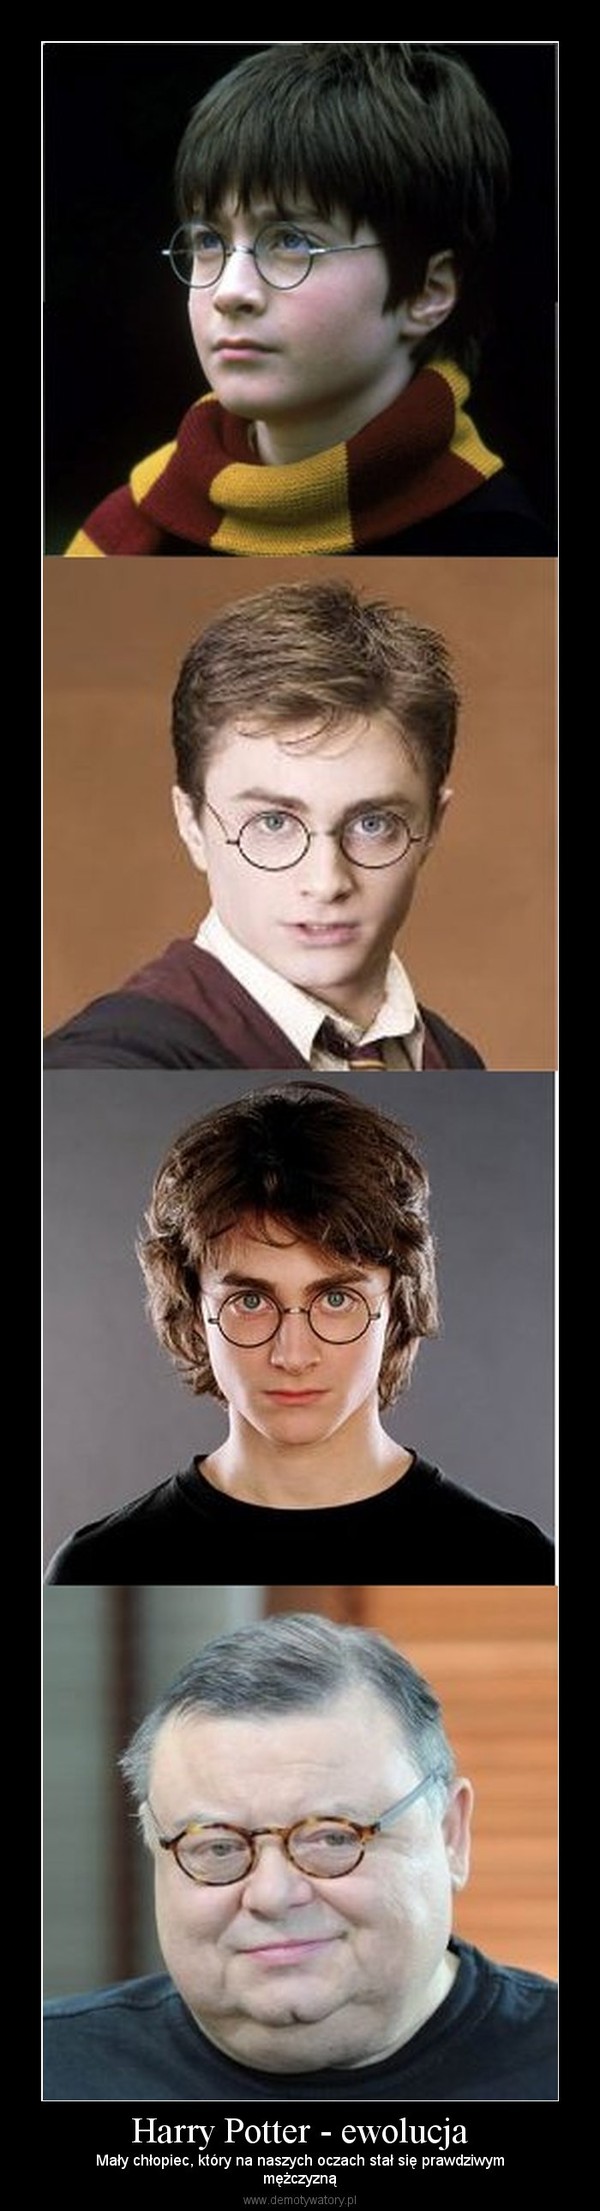 Harry Potter - ewolucja – Mały chłopiec, który na naszych oczach stał się prawdziwymmężczyzną 